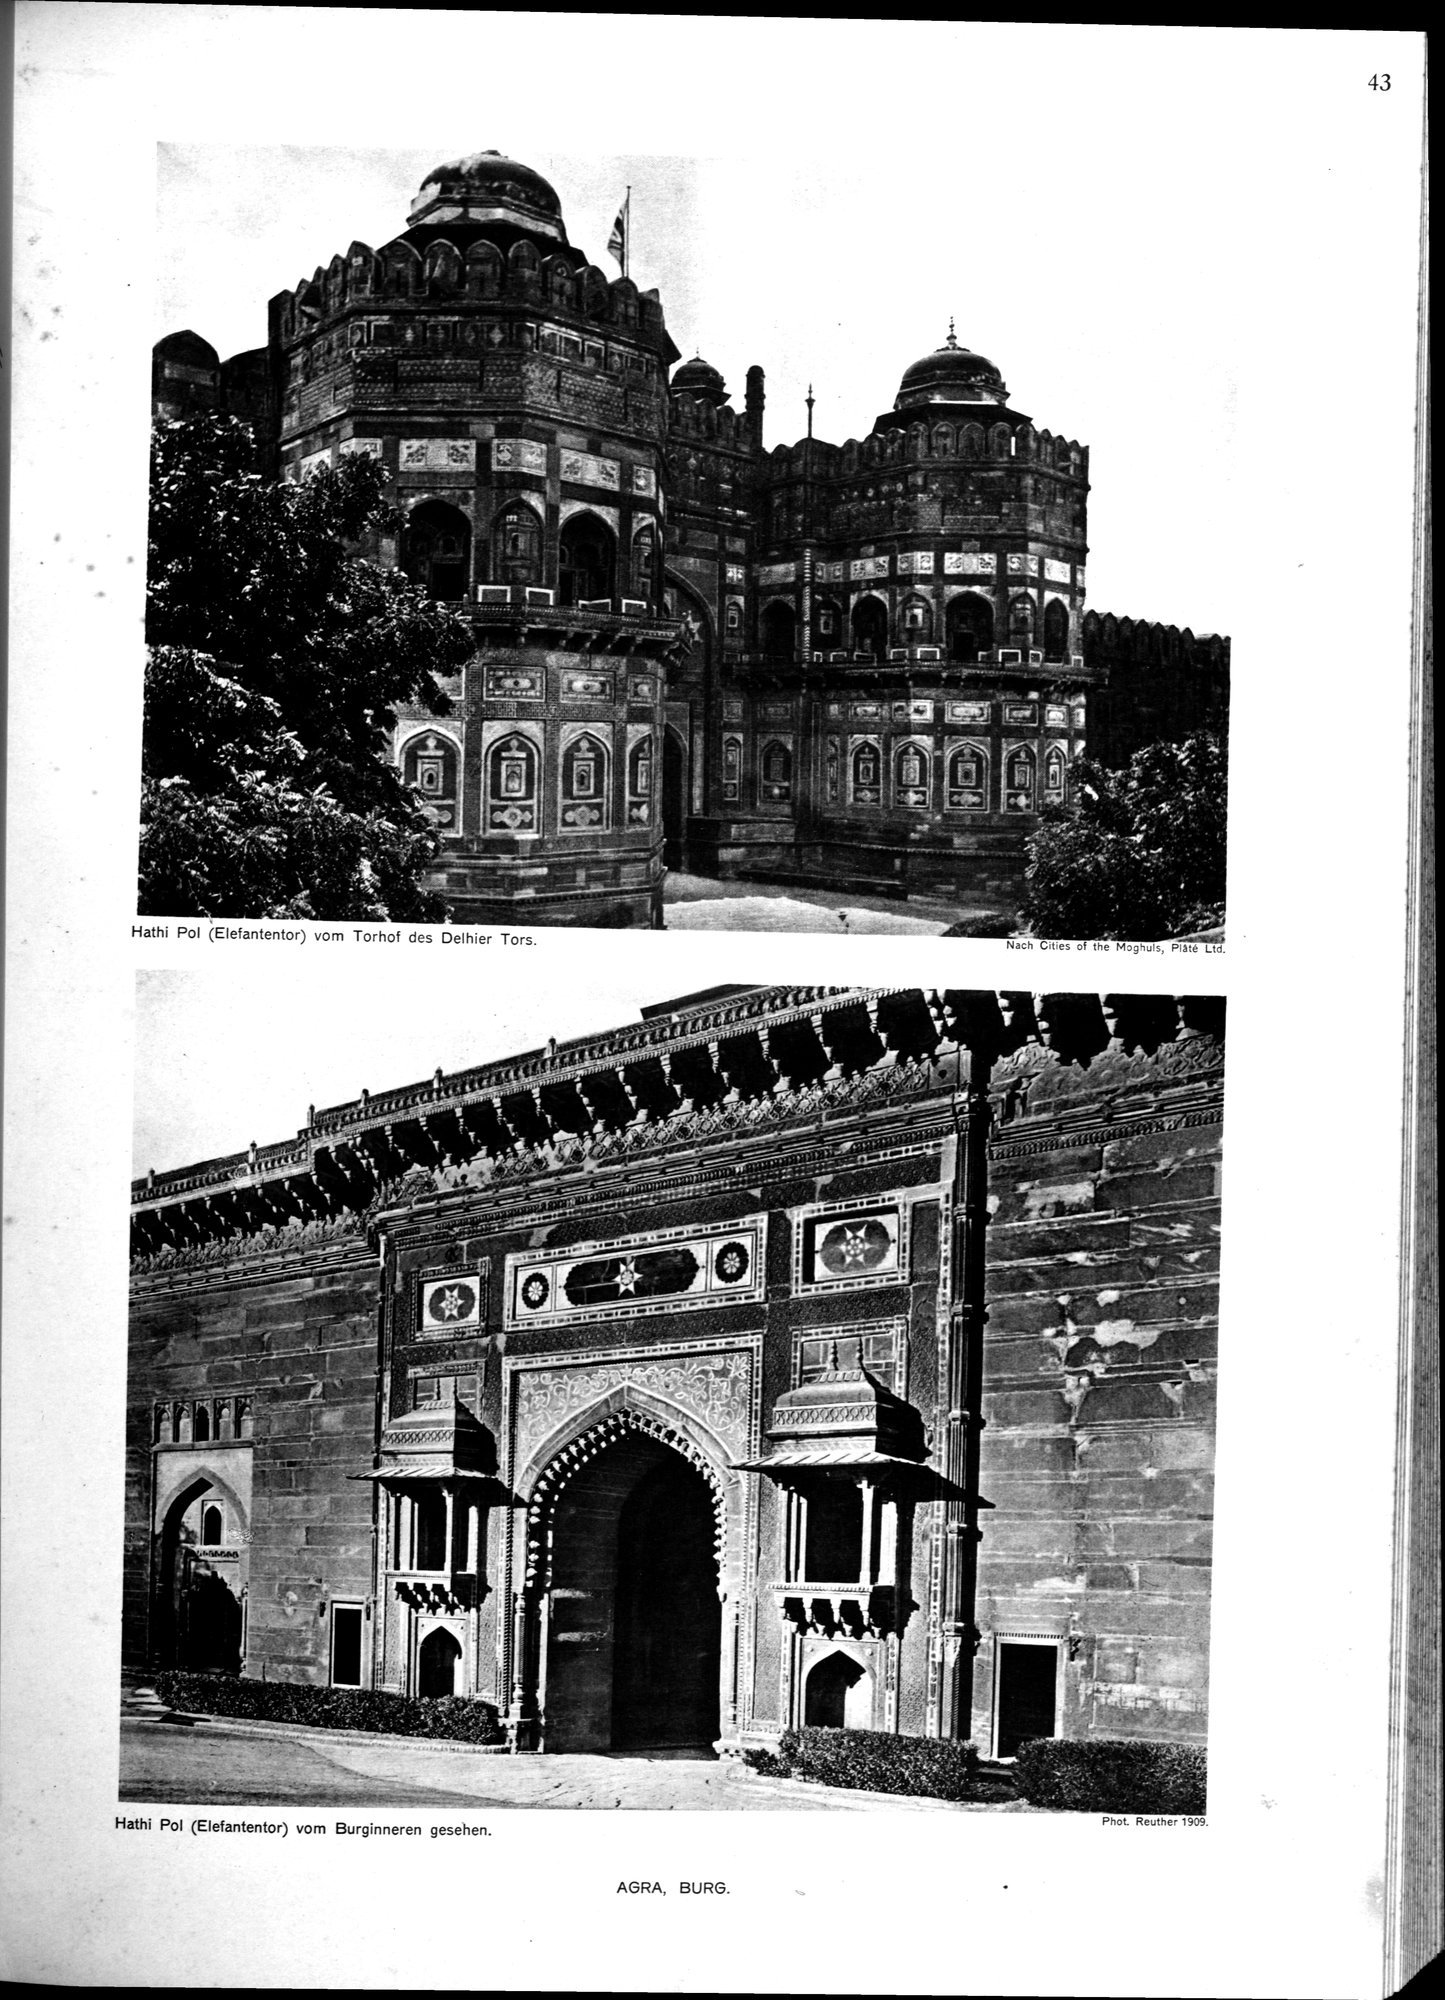 Indische Palaste und Wohnhauser : vol.1 / Page 159 (Grayscale High Resolution Image)